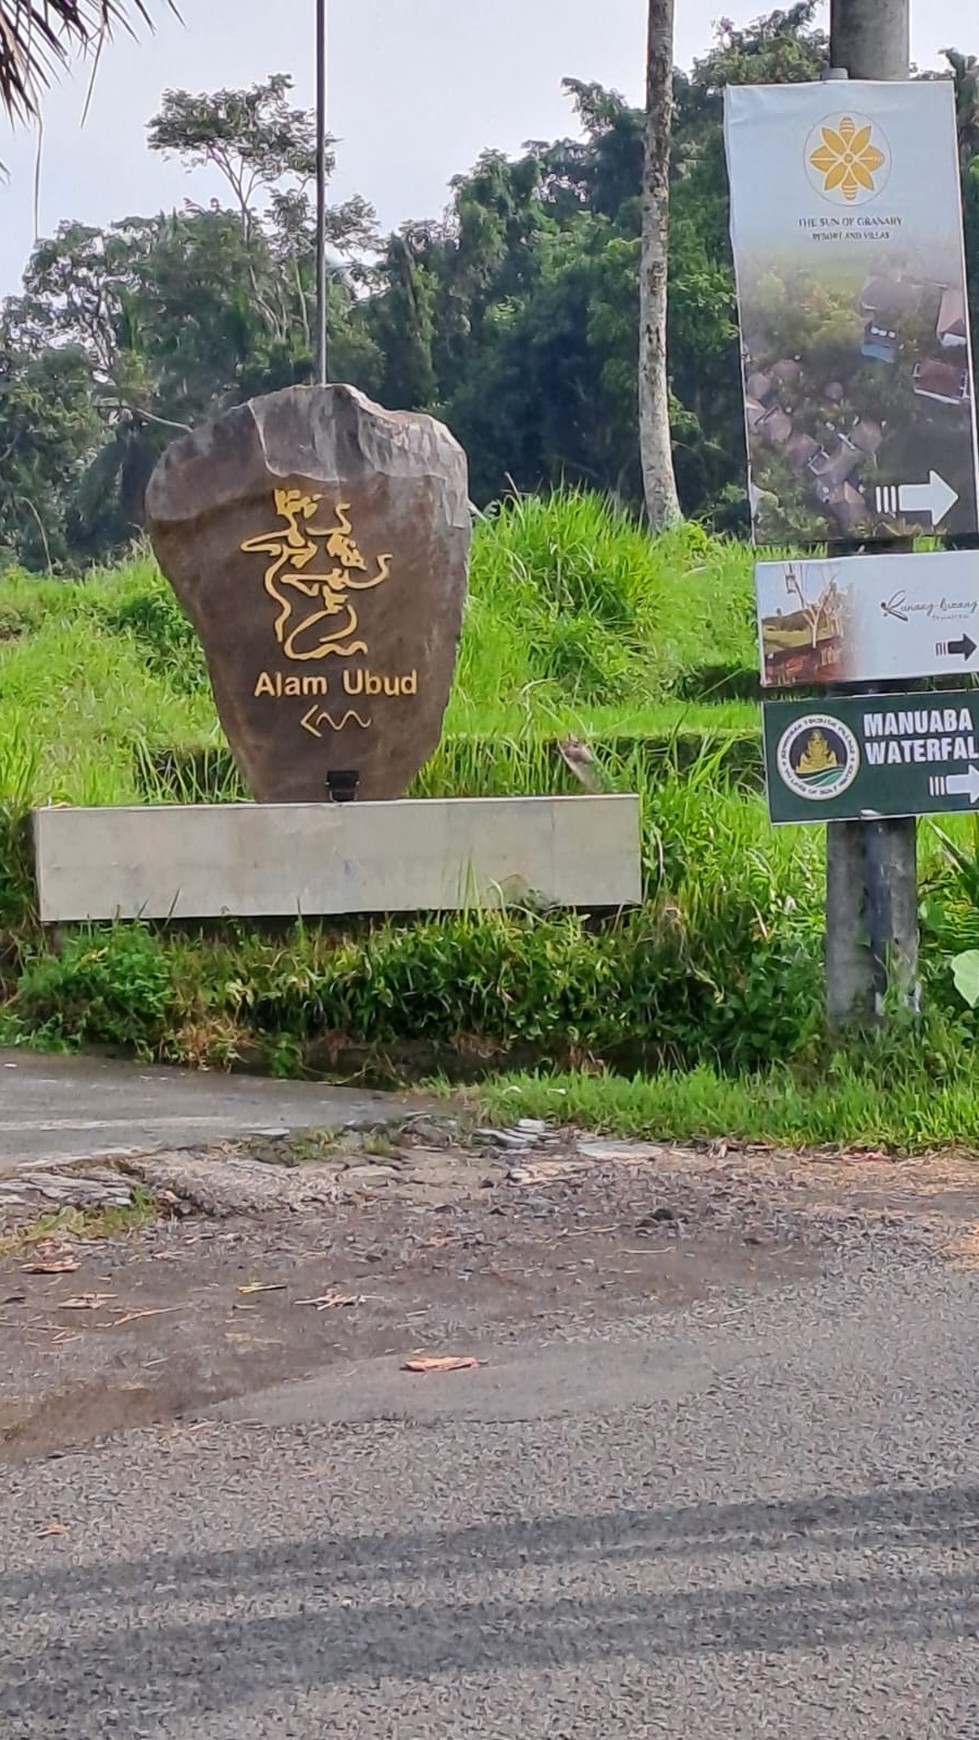 Dijual Tanah Cocok Untuk Villa View Alam Cantik Di Daerah Ubud Bali 